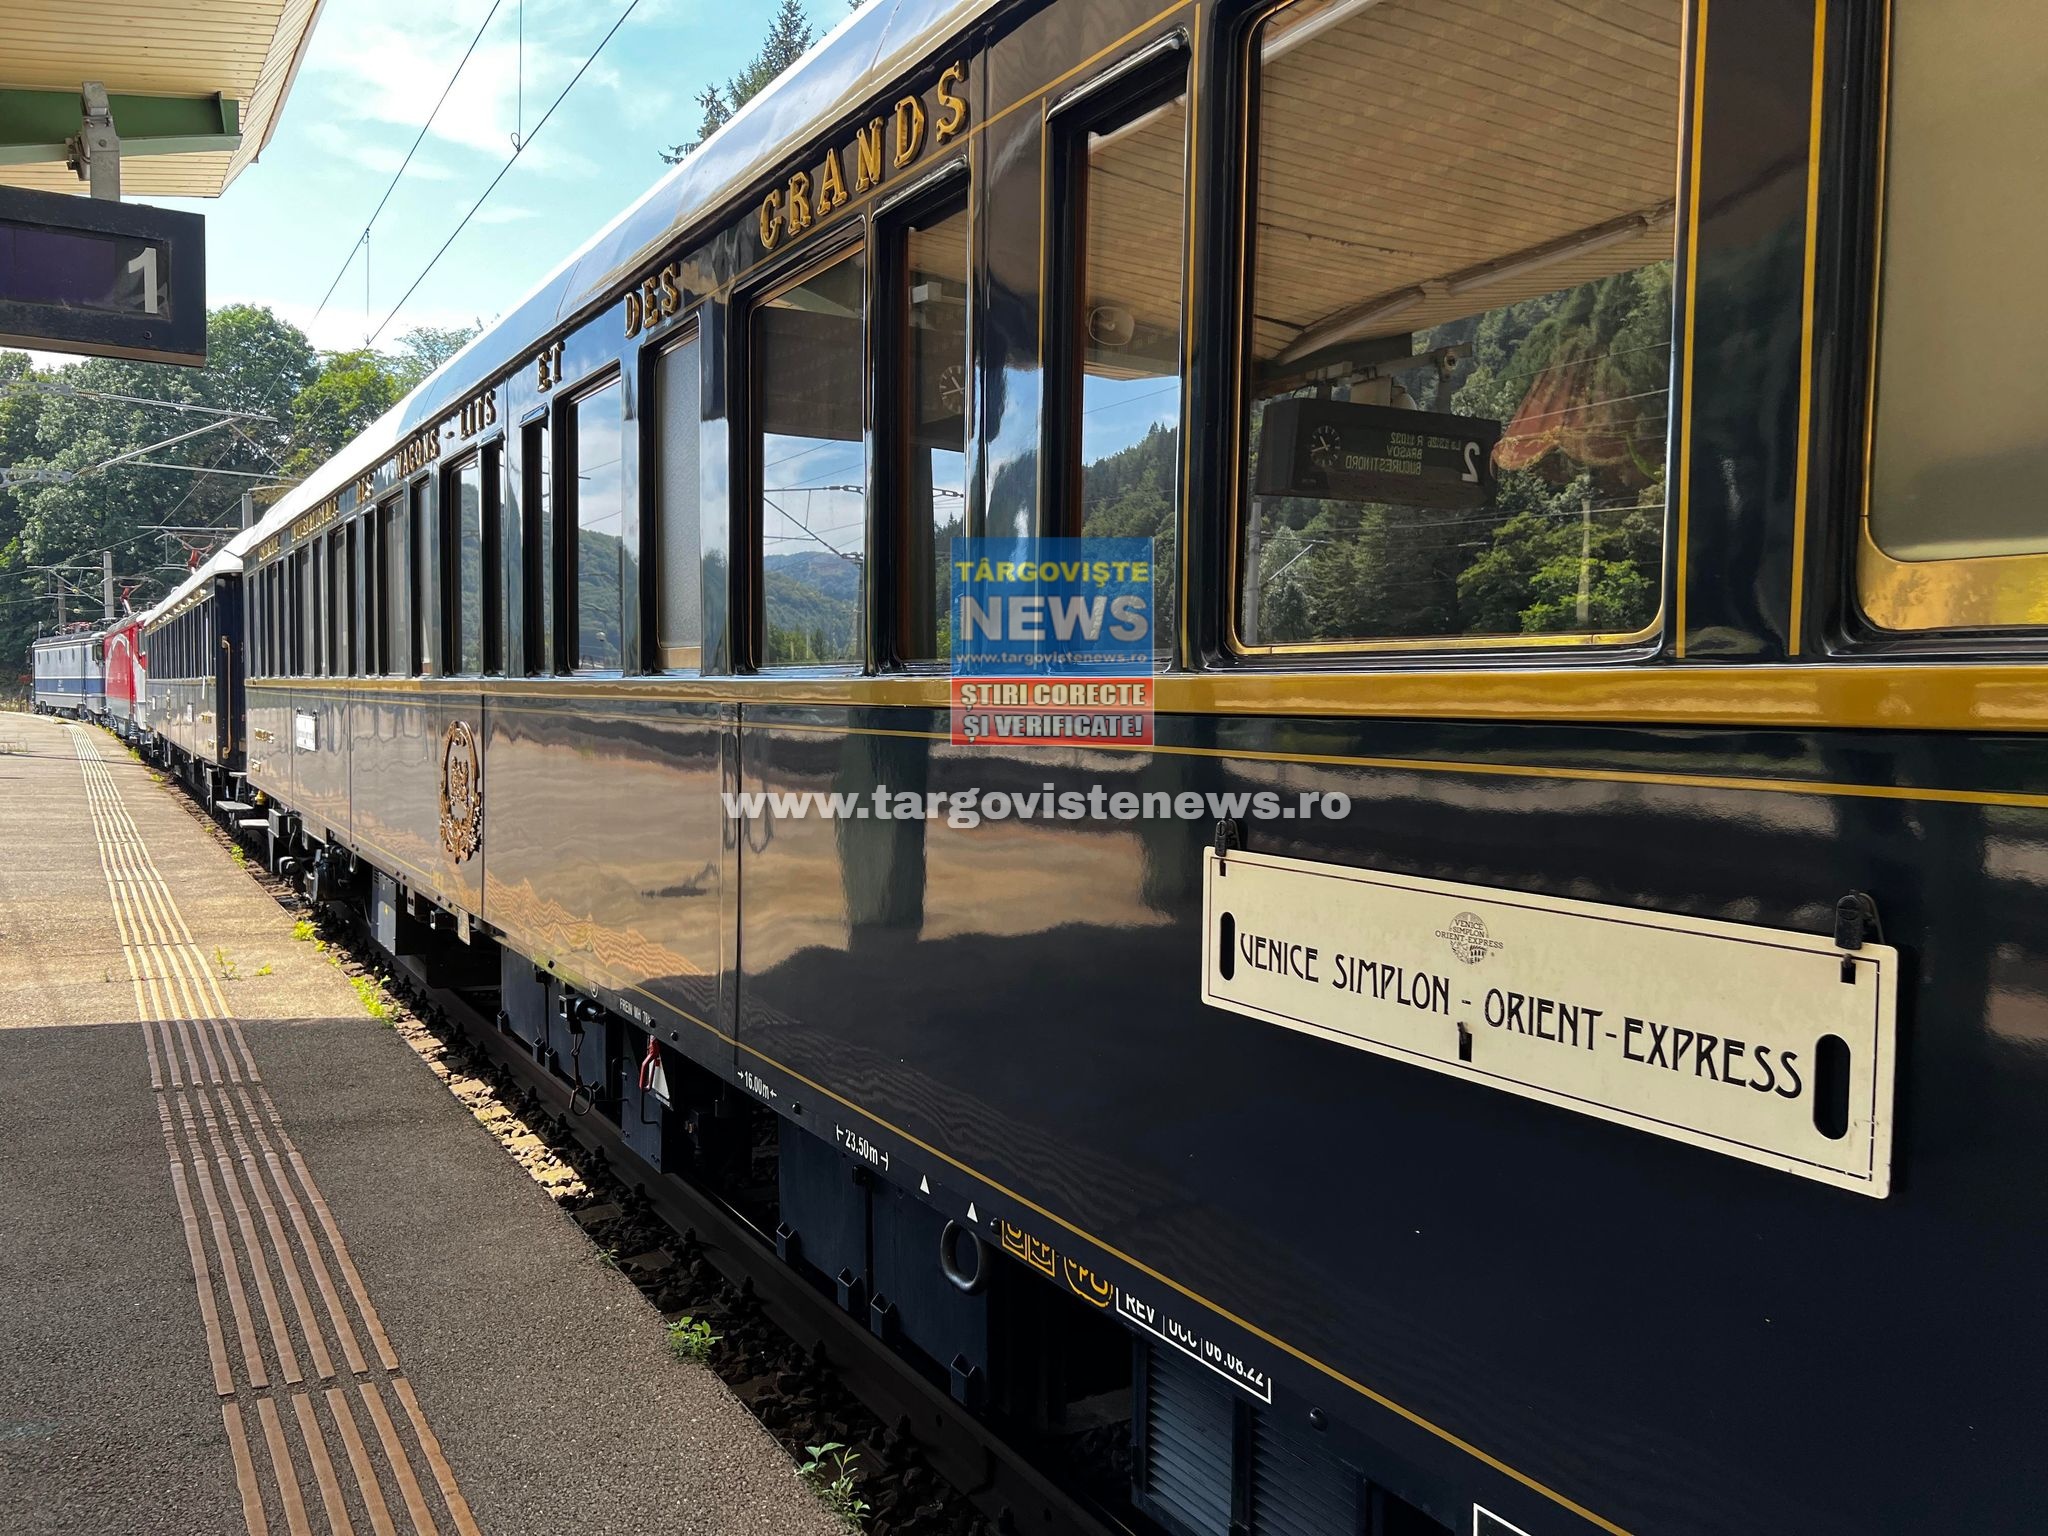 VIDEO – 17 mii de lire sterline, preţul unui bilet pentru a călători cu celebrul tren Orient Express